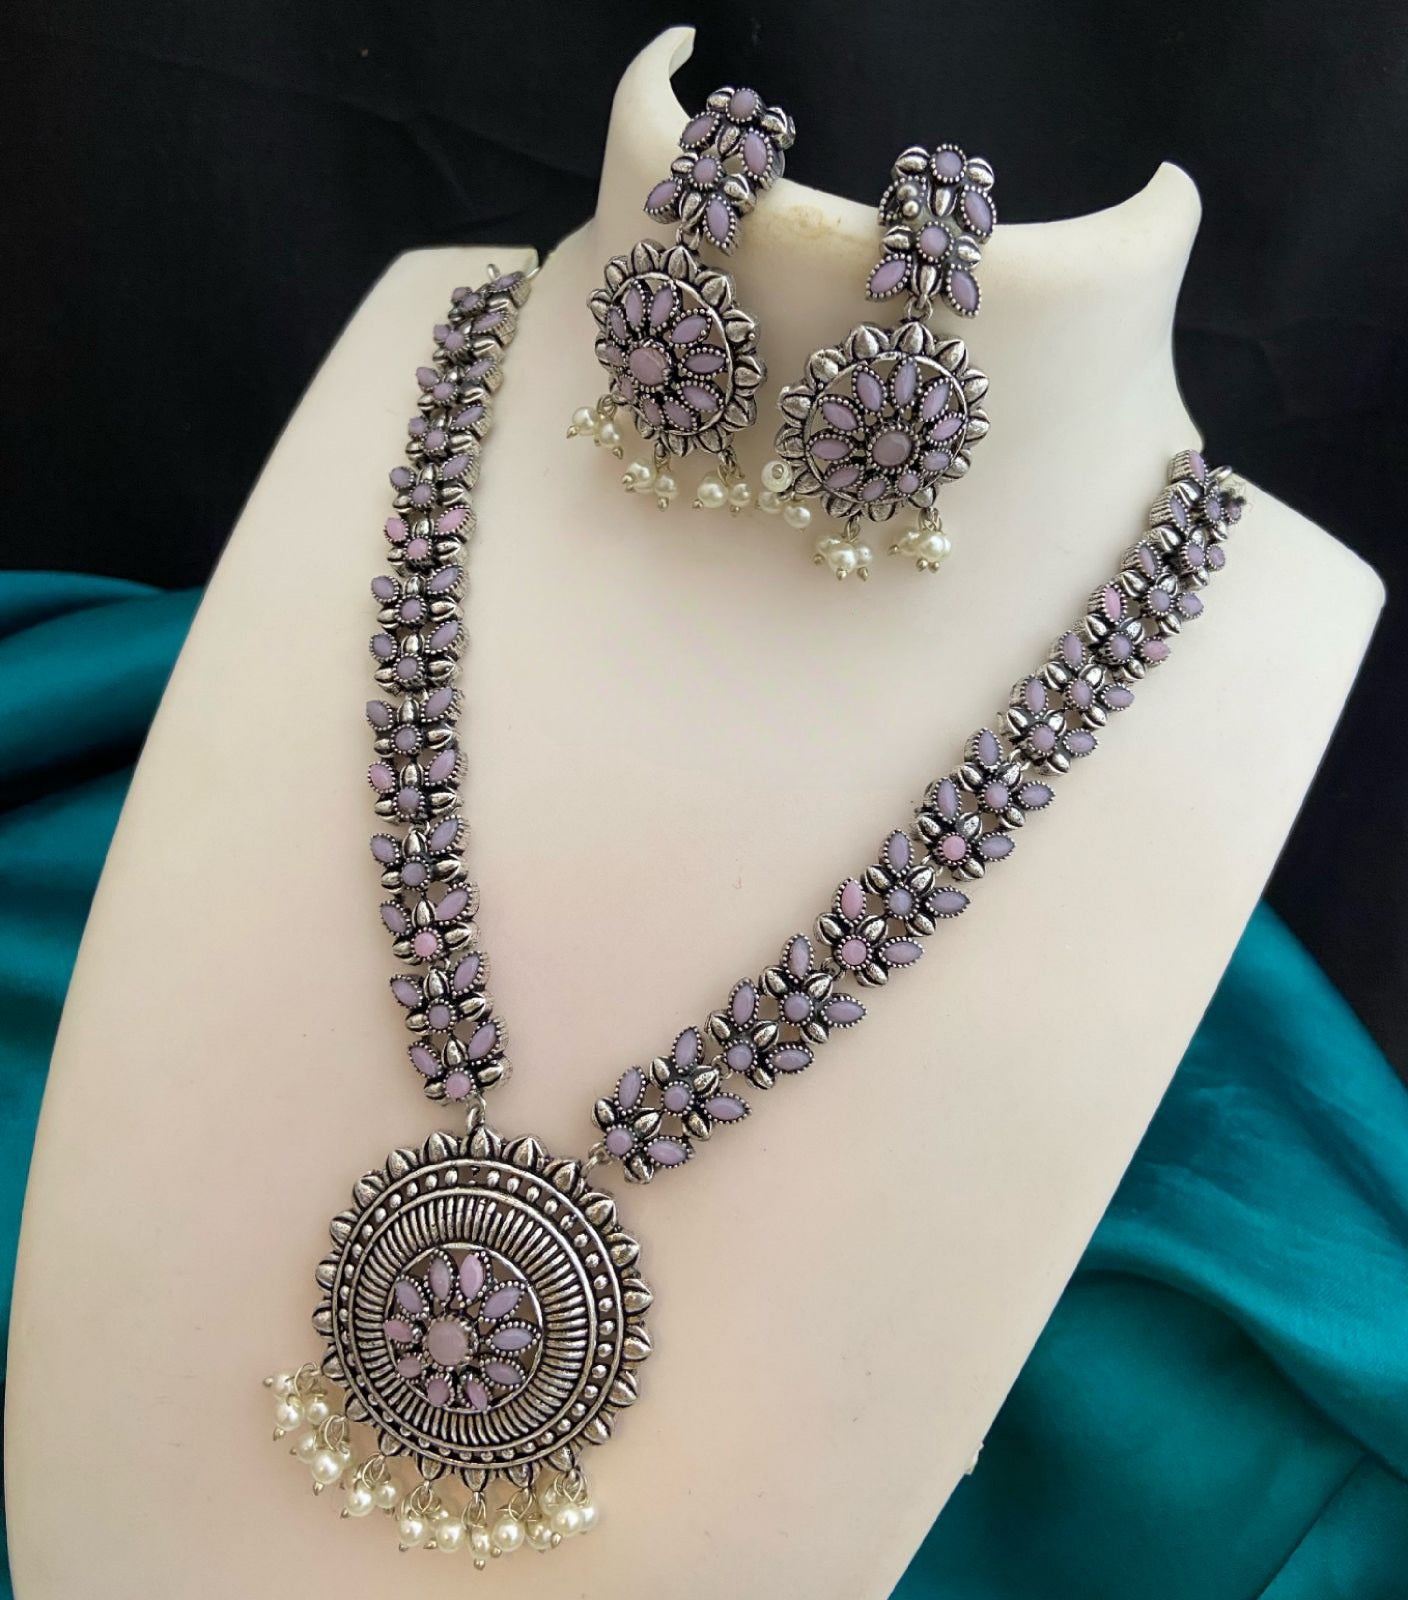 Premium Quality German Silver Oxidized Indian jewelry necklace | Indian Ethnic Jewelry | Wedding Jewelry | Party Wear Jewelry Set